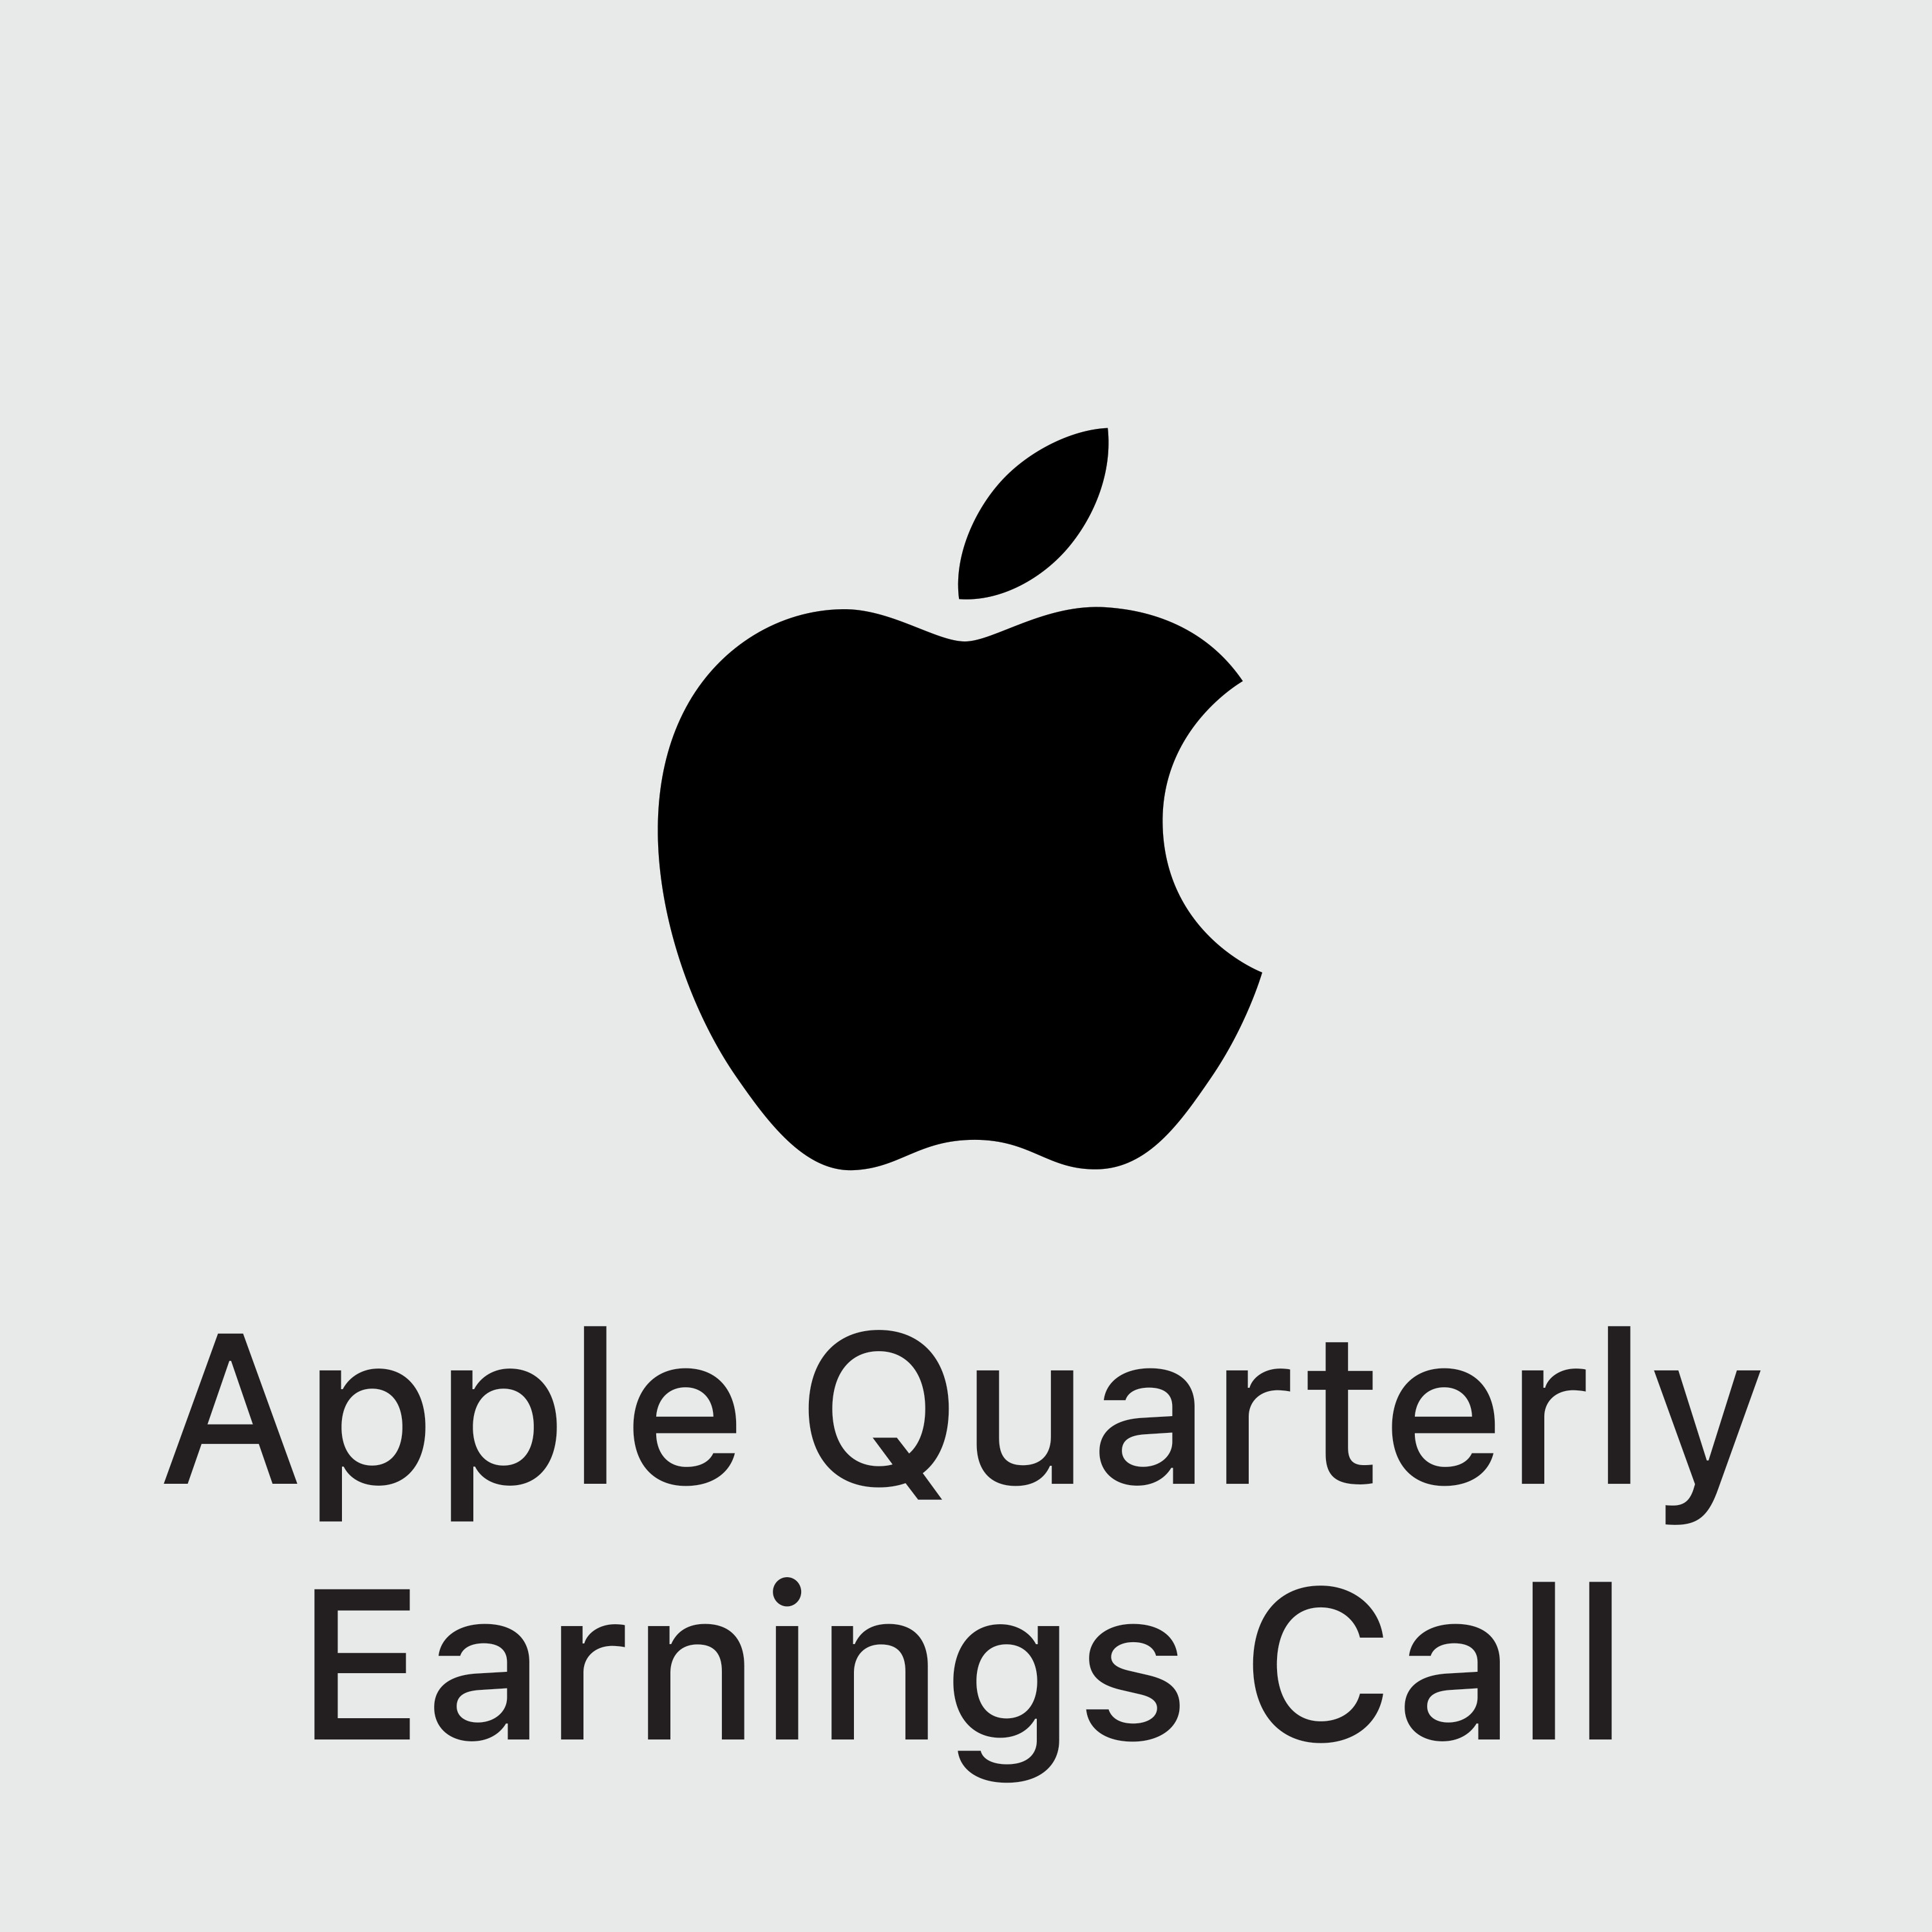 Apple Quarterly Earnings Call